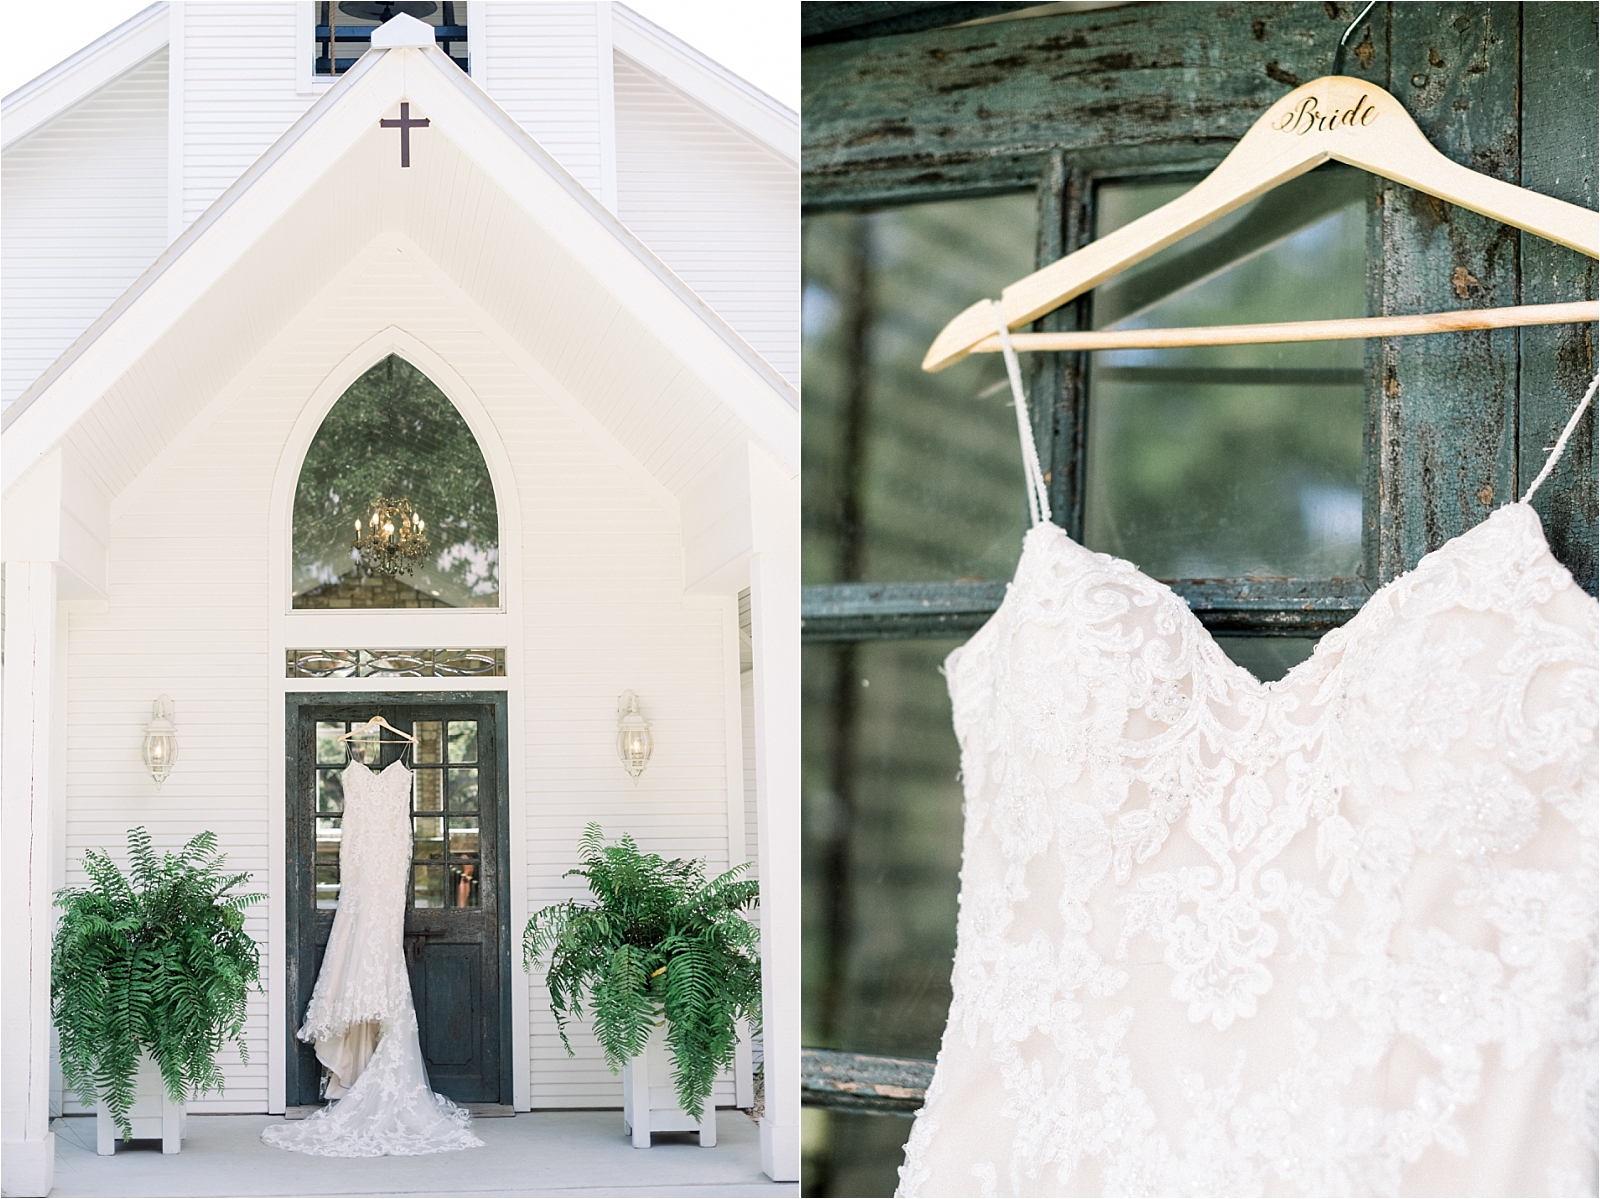 chandelier of gruene wedding dress